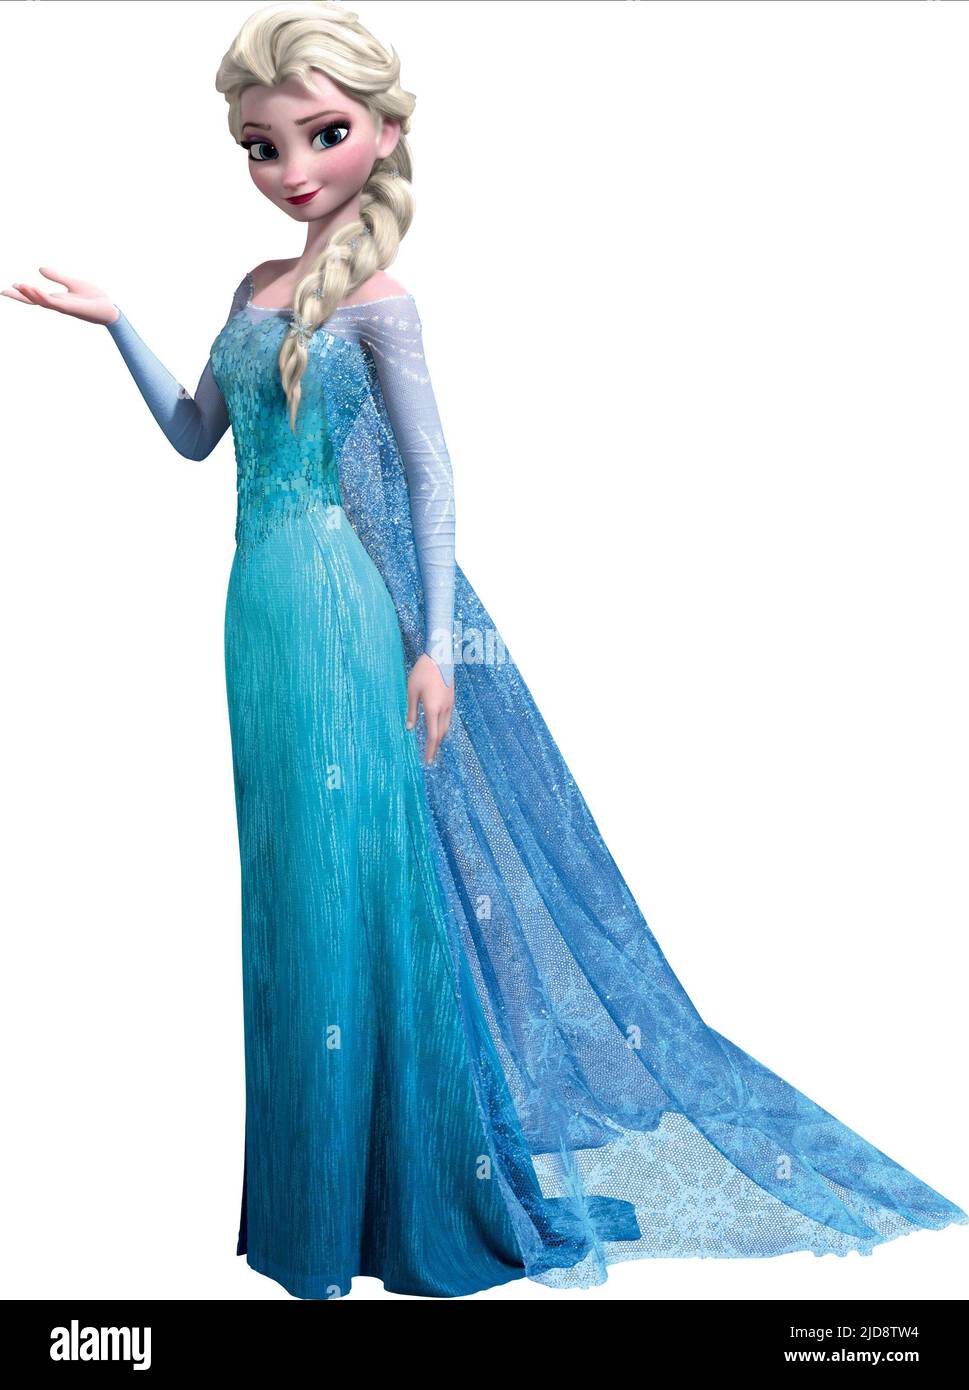 Ultimate Compilation of Stunning Elsa Images in Full 4K – 999+ Captivating Elsa Images